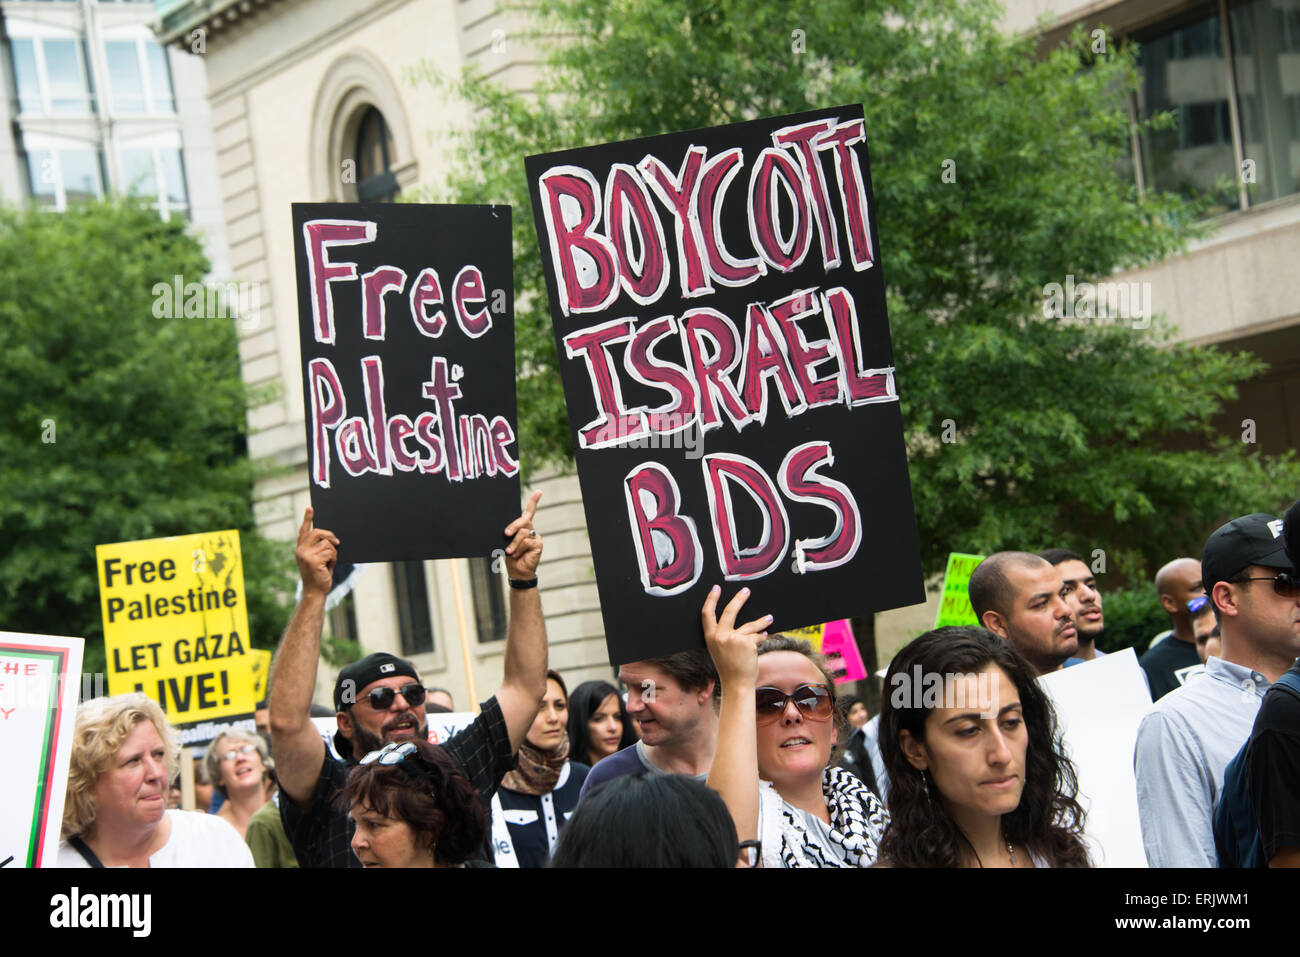 Les manifestants tiennent des pancartes "Palestine libre" et "boycotter Israël BDS' au cours d'une manifestation contre l'offensive sur Gaza en 2014. Banque D'Images